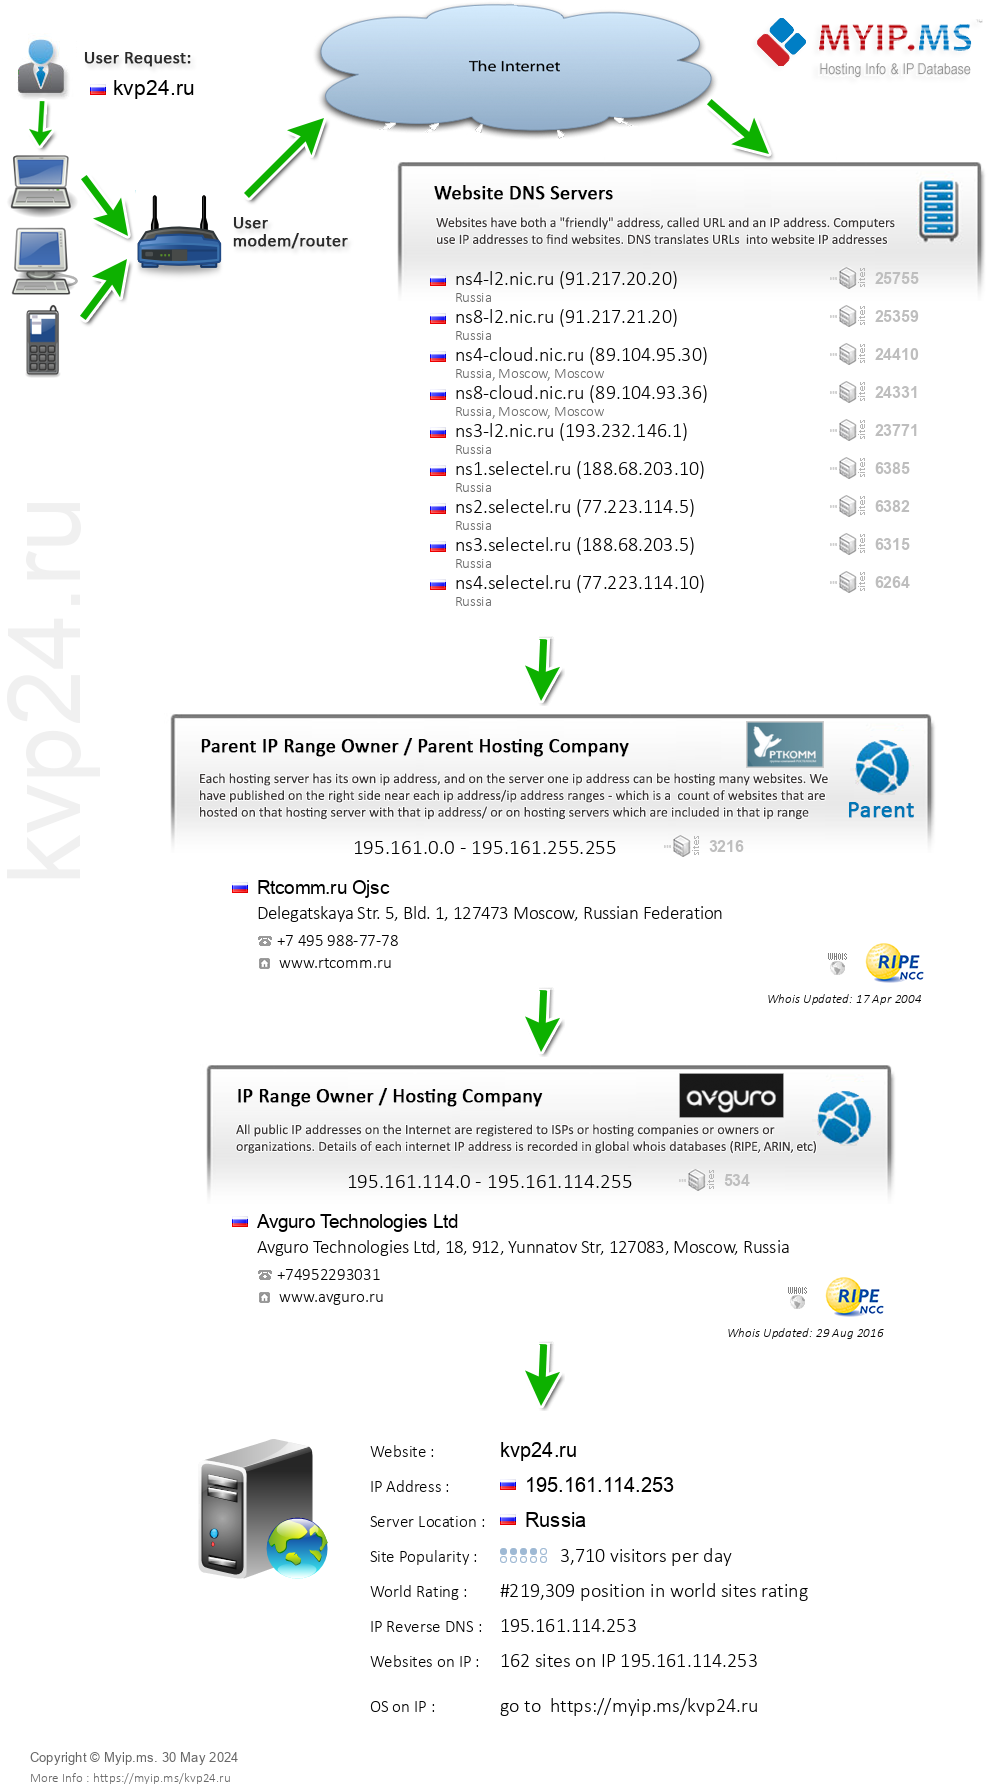 Kvp24.ru - Website Hosting Visual IP Diagram